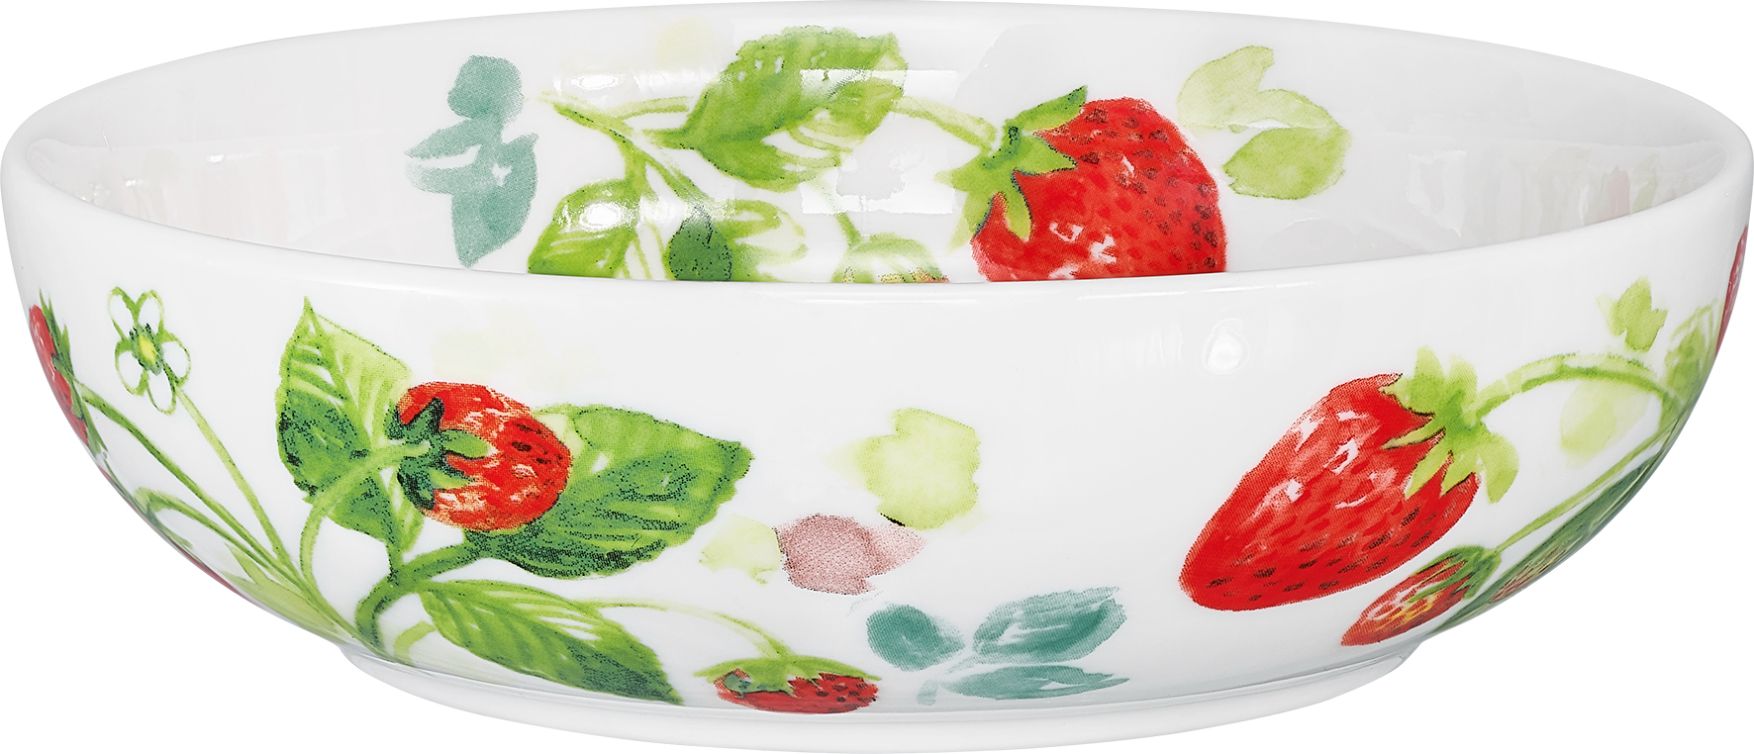 Fragaria serveringsskål i vitt porslin med röda jordgubbar och gröna blad från Cult design, mått 21 x 8 cm.